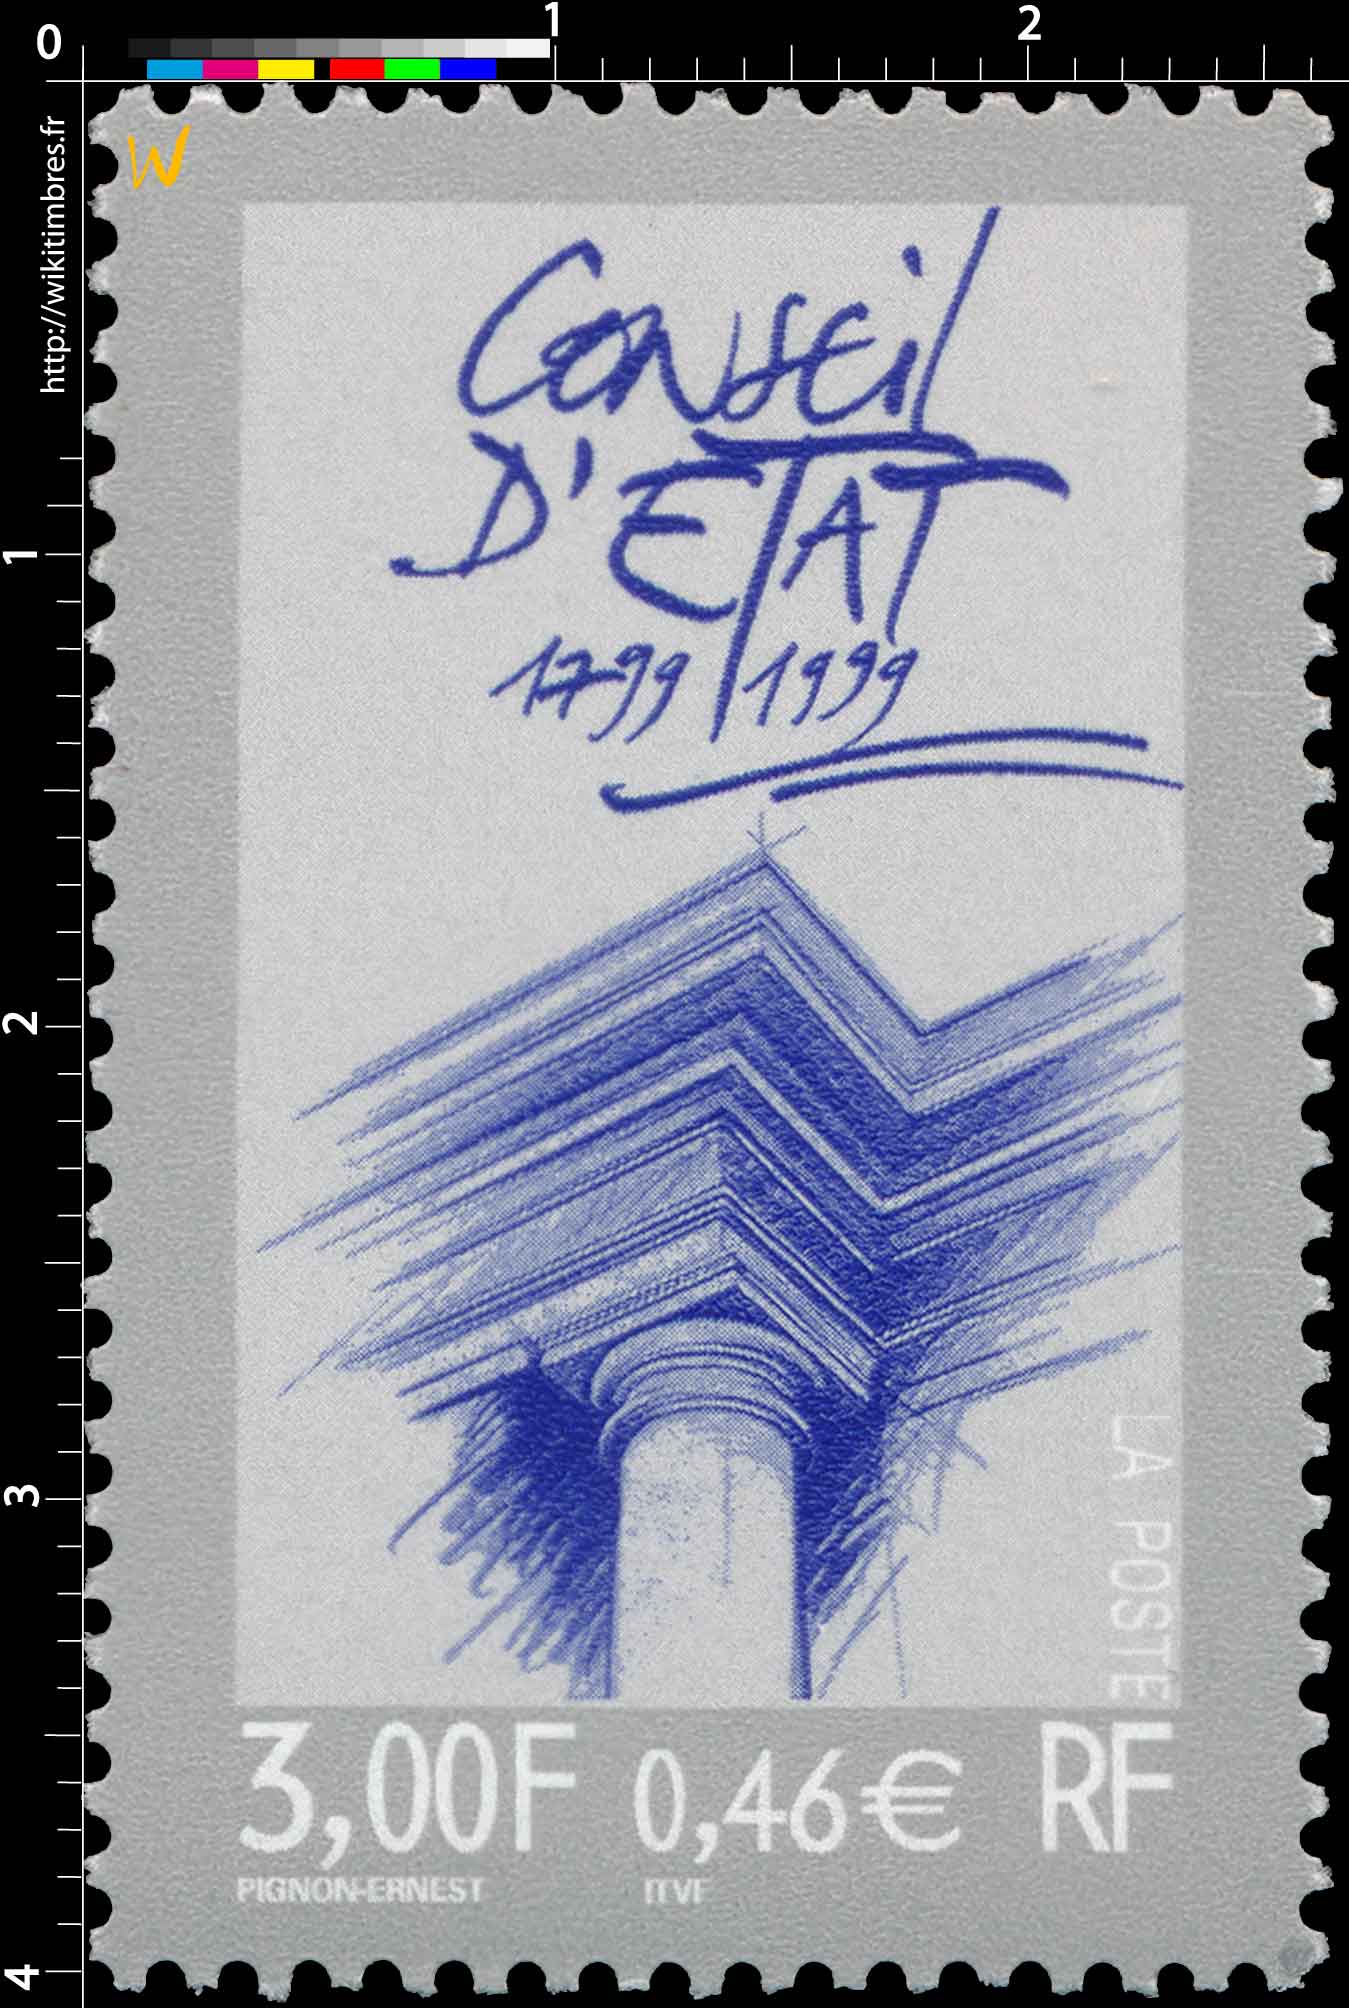 CONSEIL D'ÉTAT 1799-1999